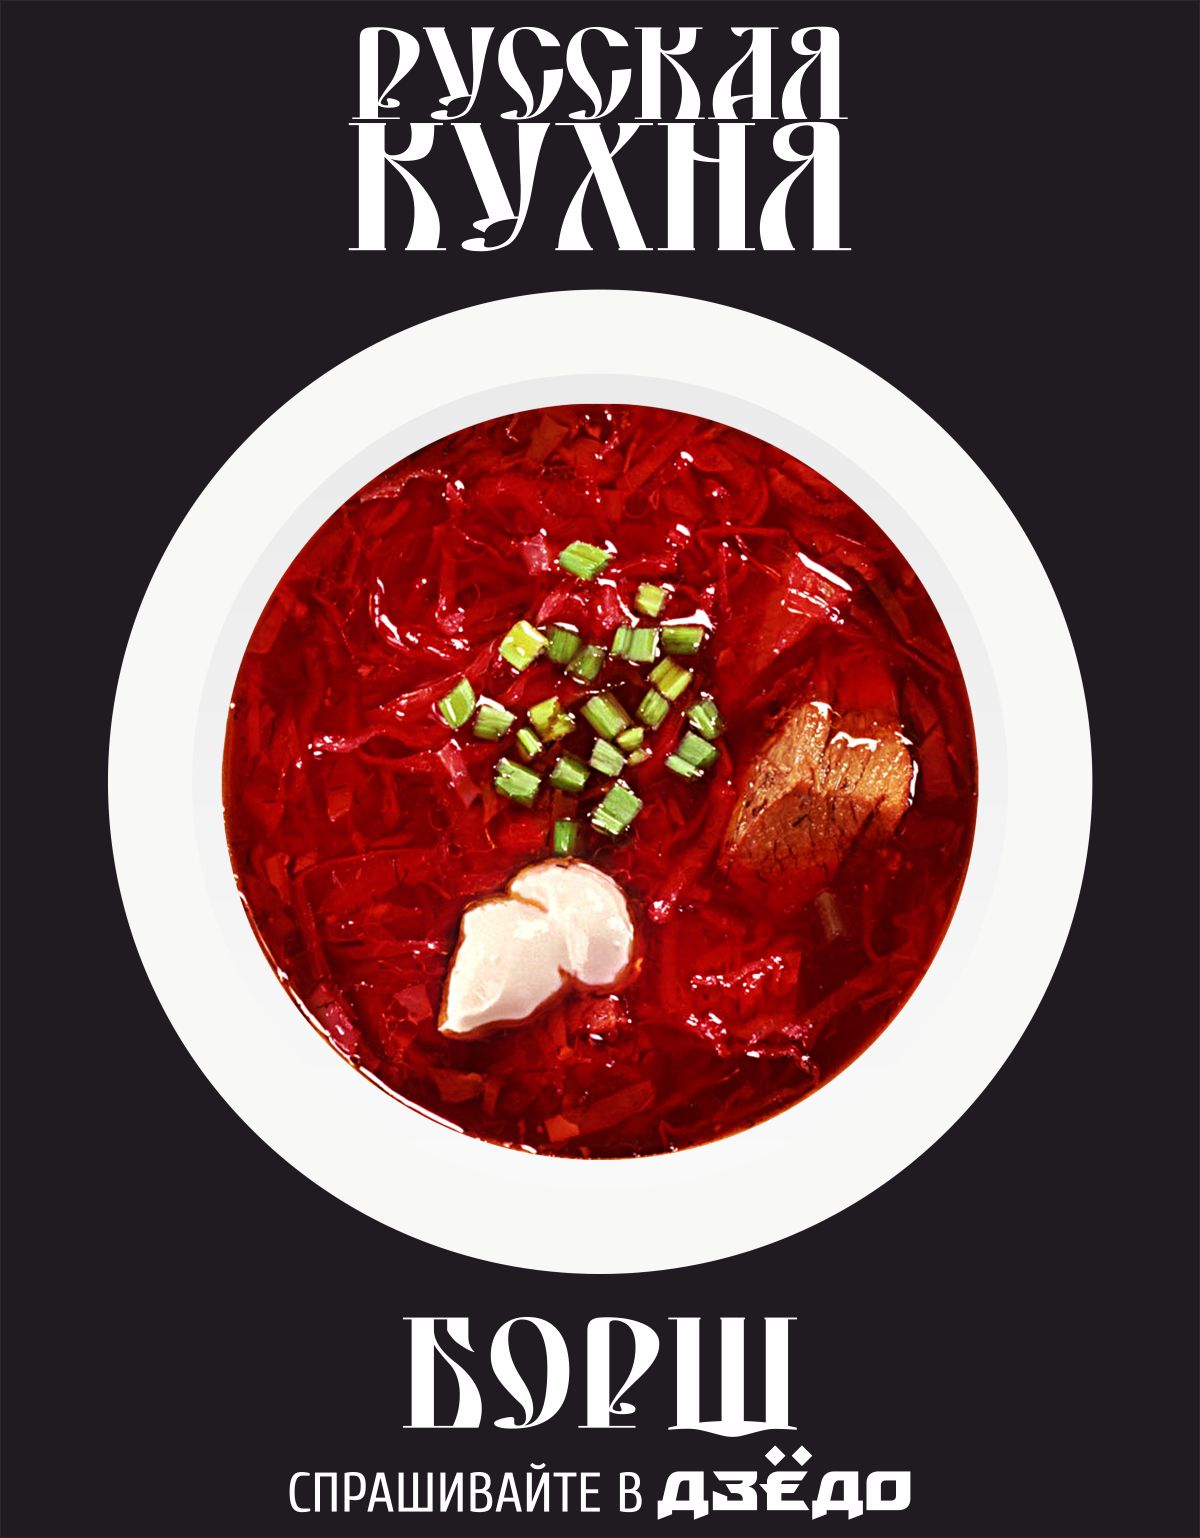 Оформление меню русской кухни